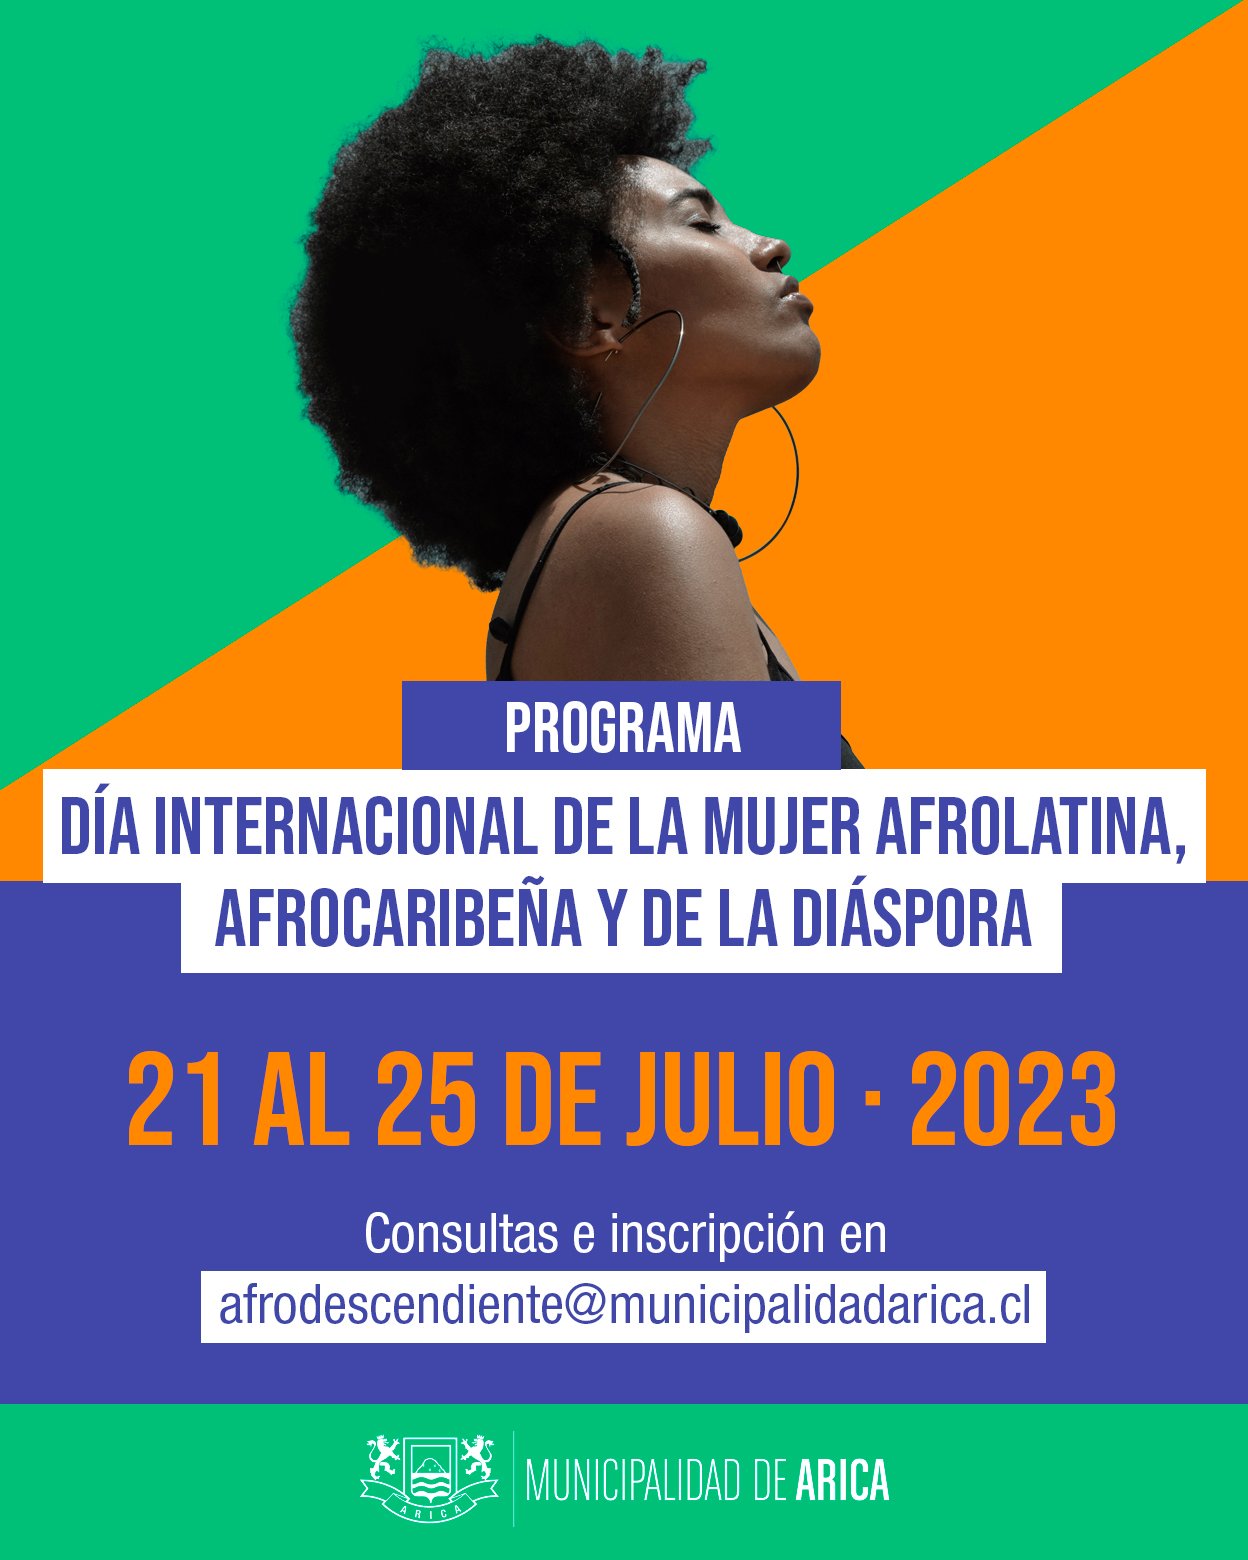 Dia De la Mujer AfroLatina, AfroCaribeña y de la diáspora